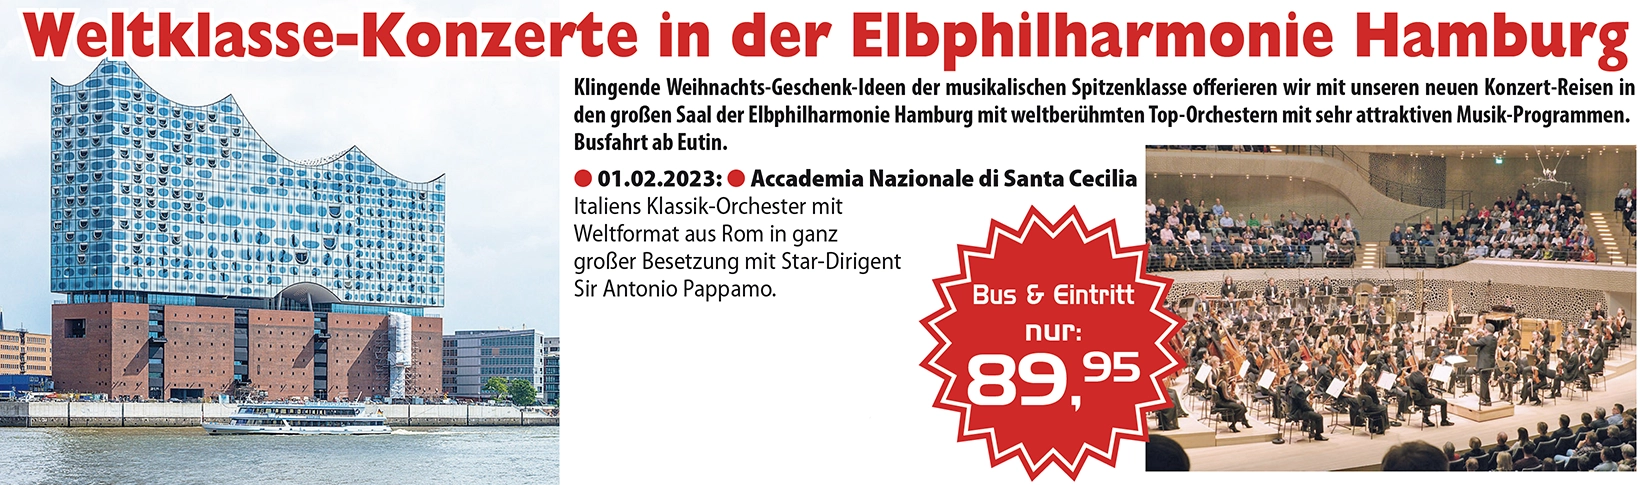 Weltklasse-Konzerte in der Elbphilharmonie Hamburg